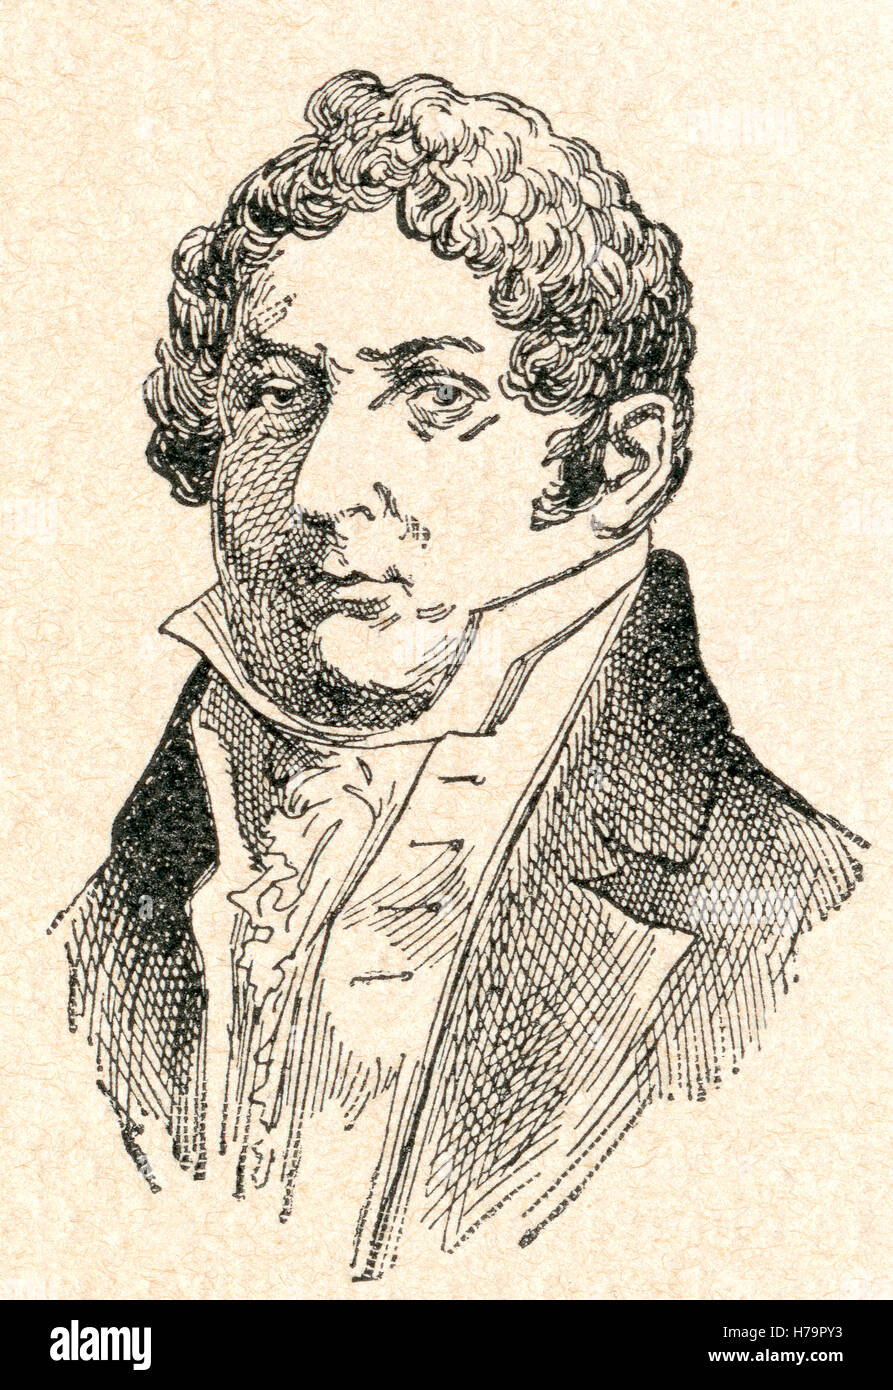 Charles-Guillaume Étienne, 1778 - 1845. 19ème siècle français dramaturge et écrivain divers. Banque D'Images